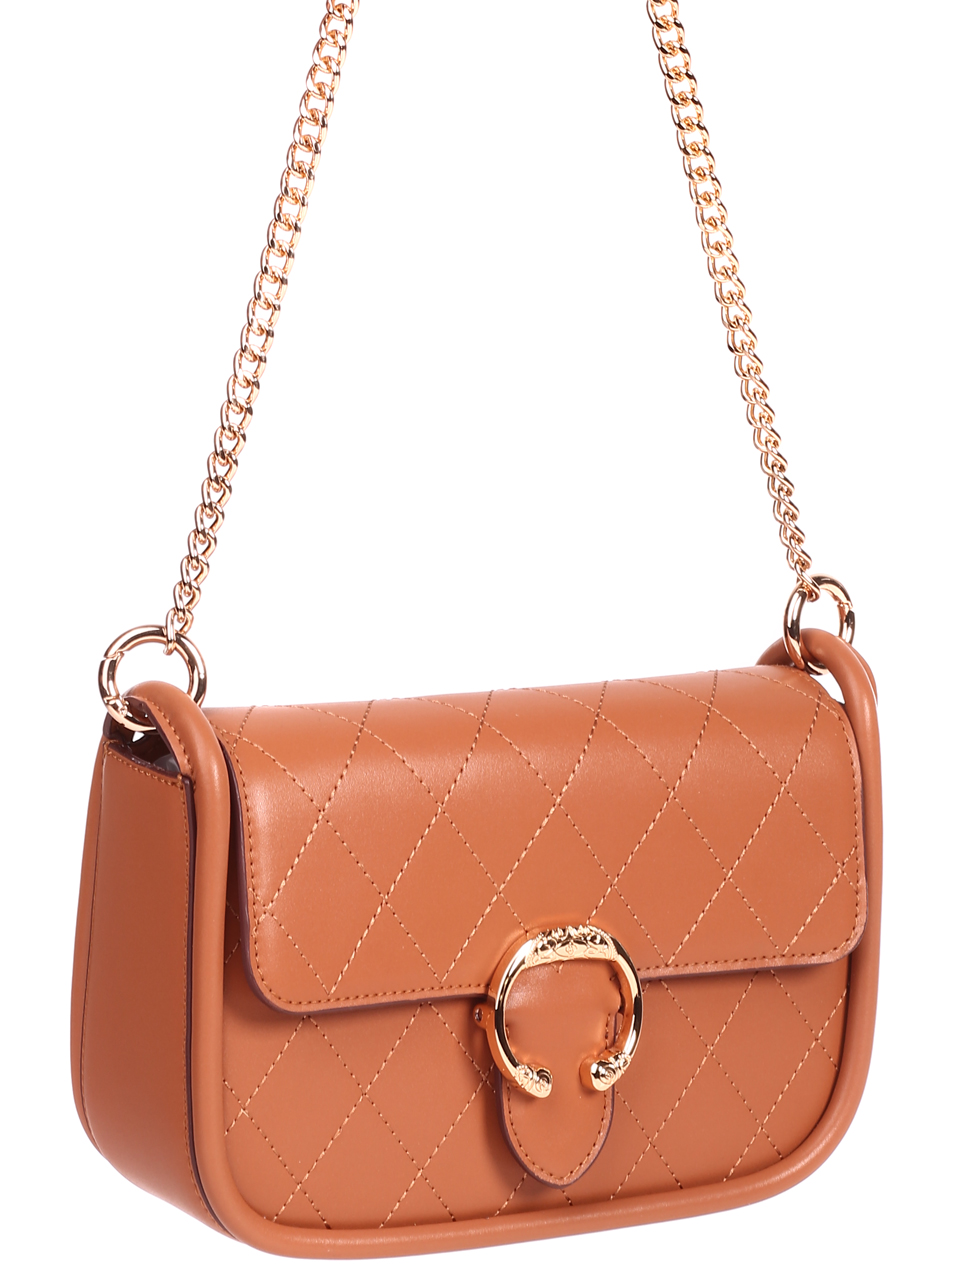 Ежедневна дамска чанта от естествена кожа в цвят камел HS-JT20471 brown